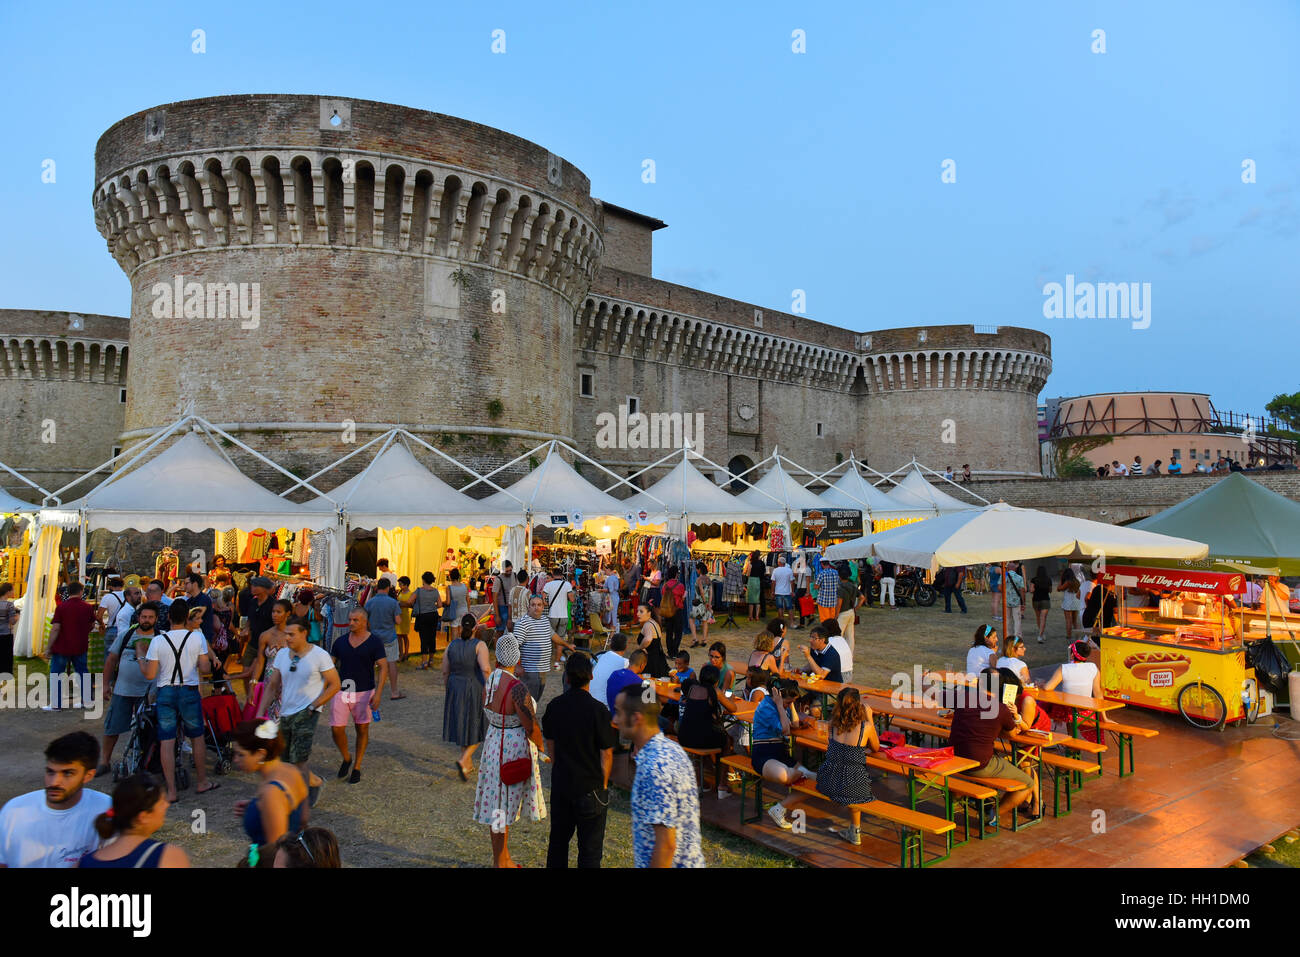 Visitors, Summer Jamboree, Rock'n'Roll Festival, Rocca Roveresca Castle, Senigallia, Province of Ancona, Marche, Italy Stock Photo